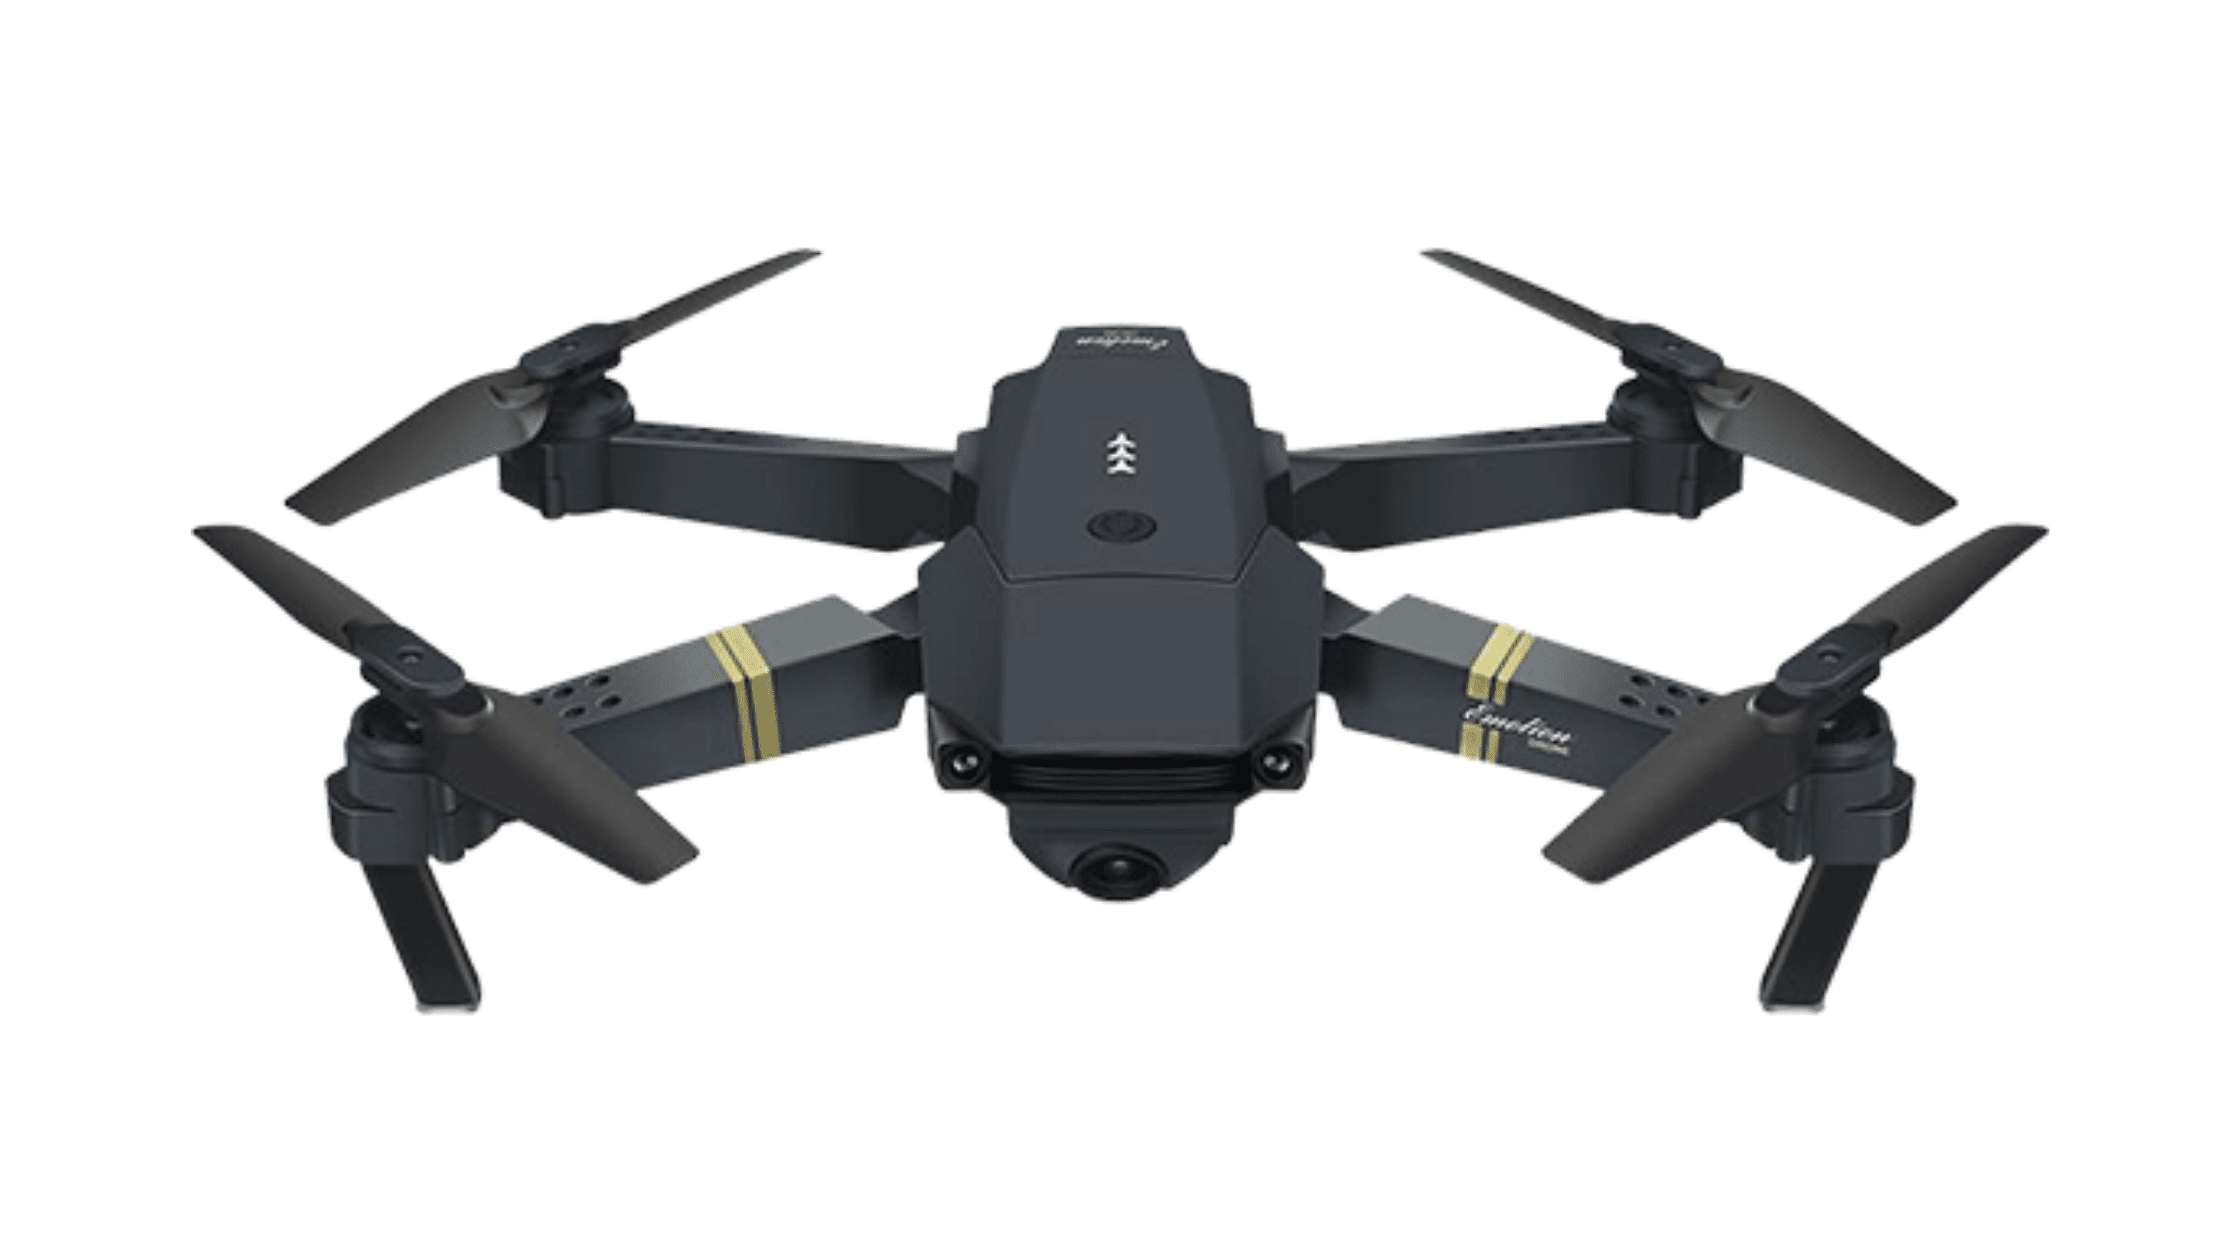 Skyline X Drone Reviews